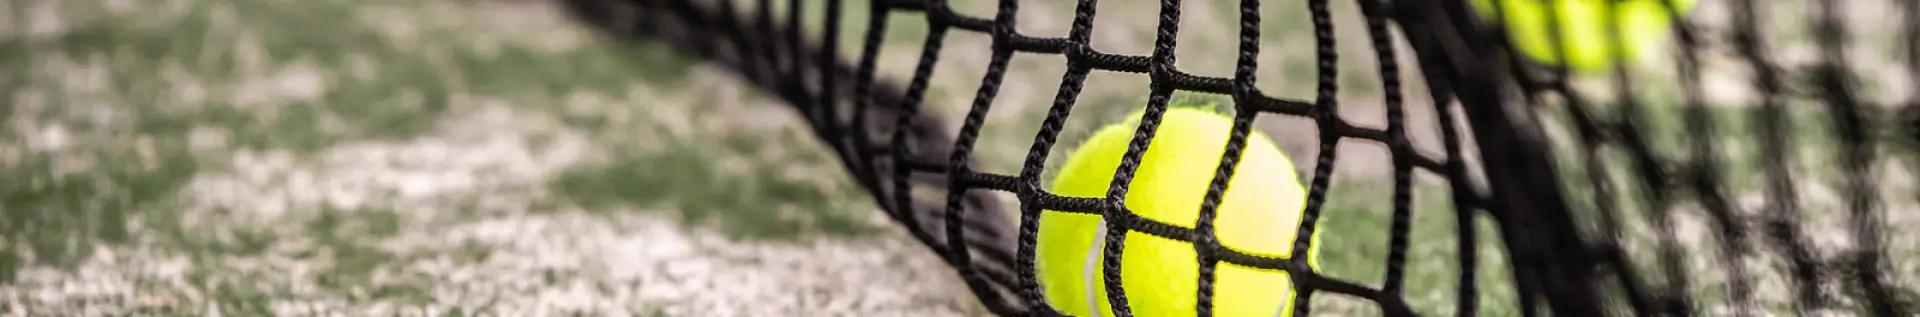 Reti da tennis standard e professionale | Ribola